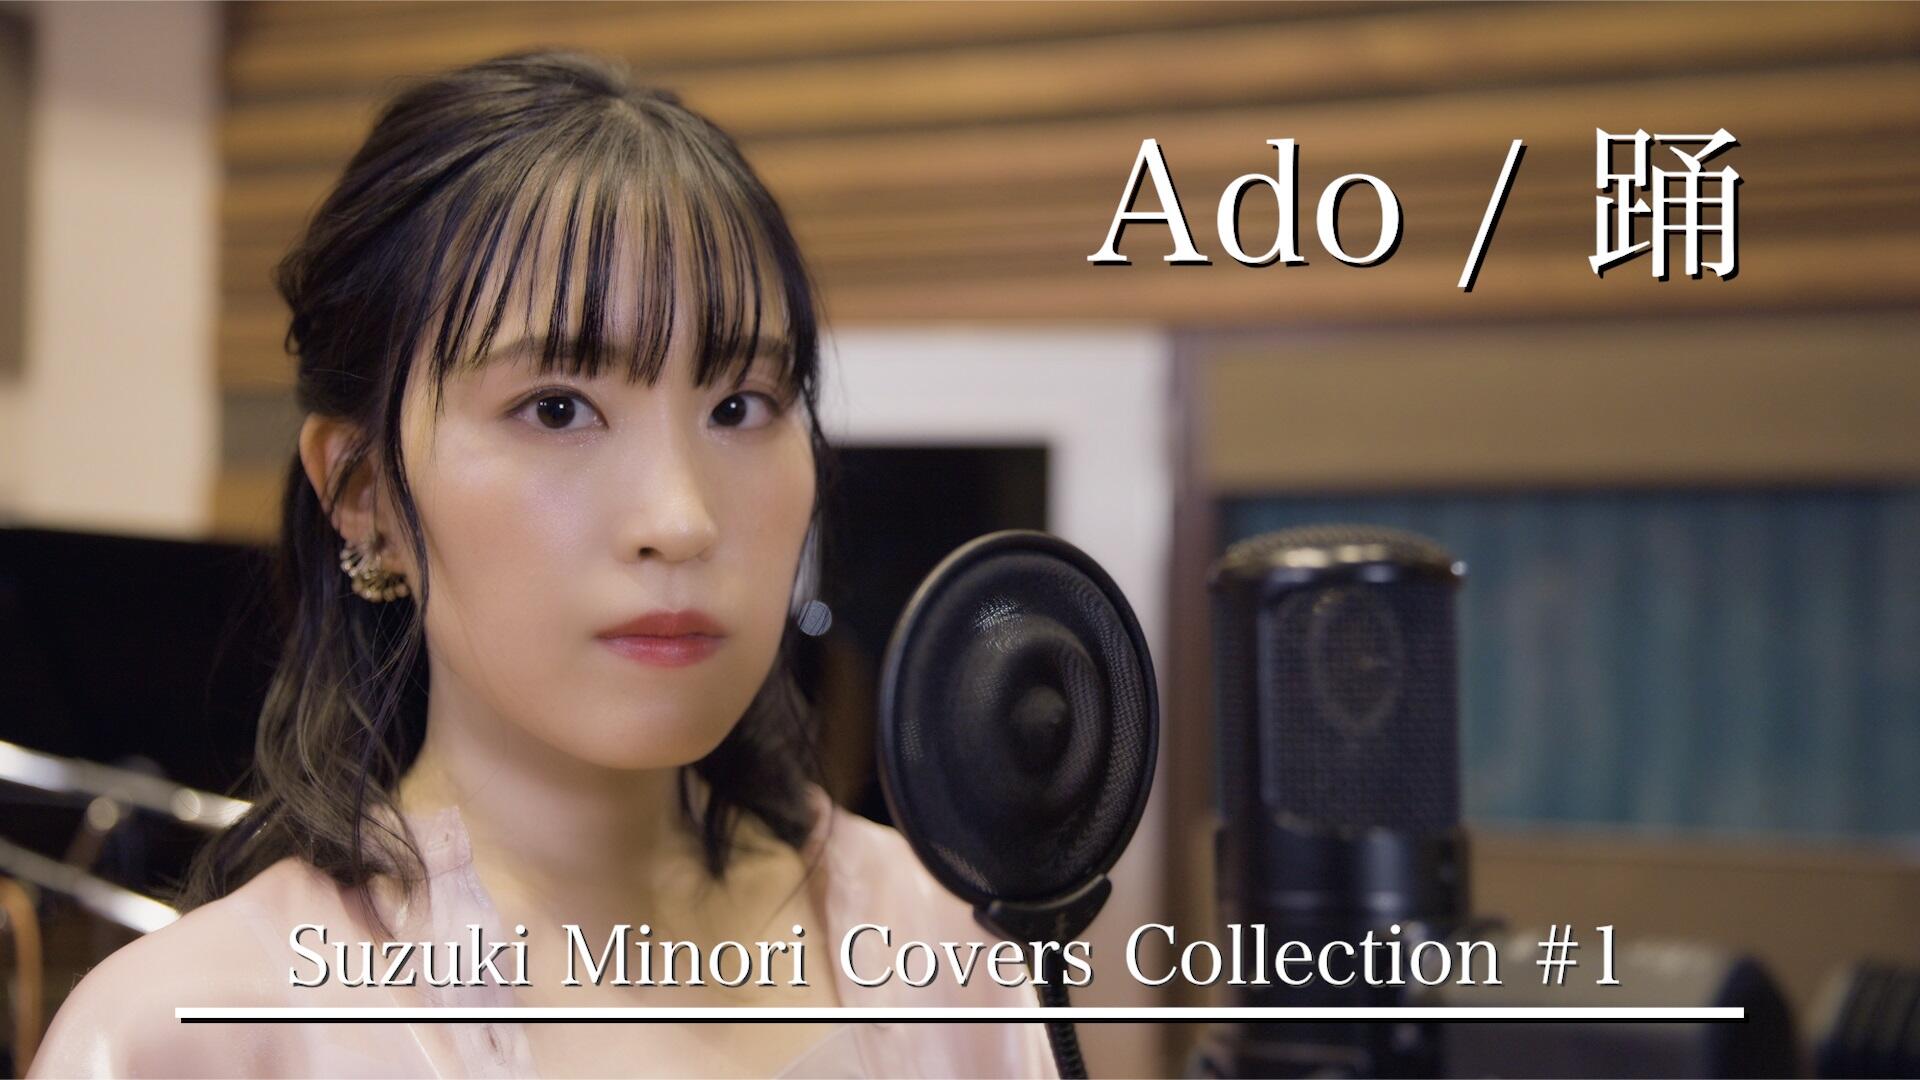 鈴木みのり、リアル一発撮りカバー企画『Suzuki Minori Covers Collection』一曲目はAdo「踊」！！